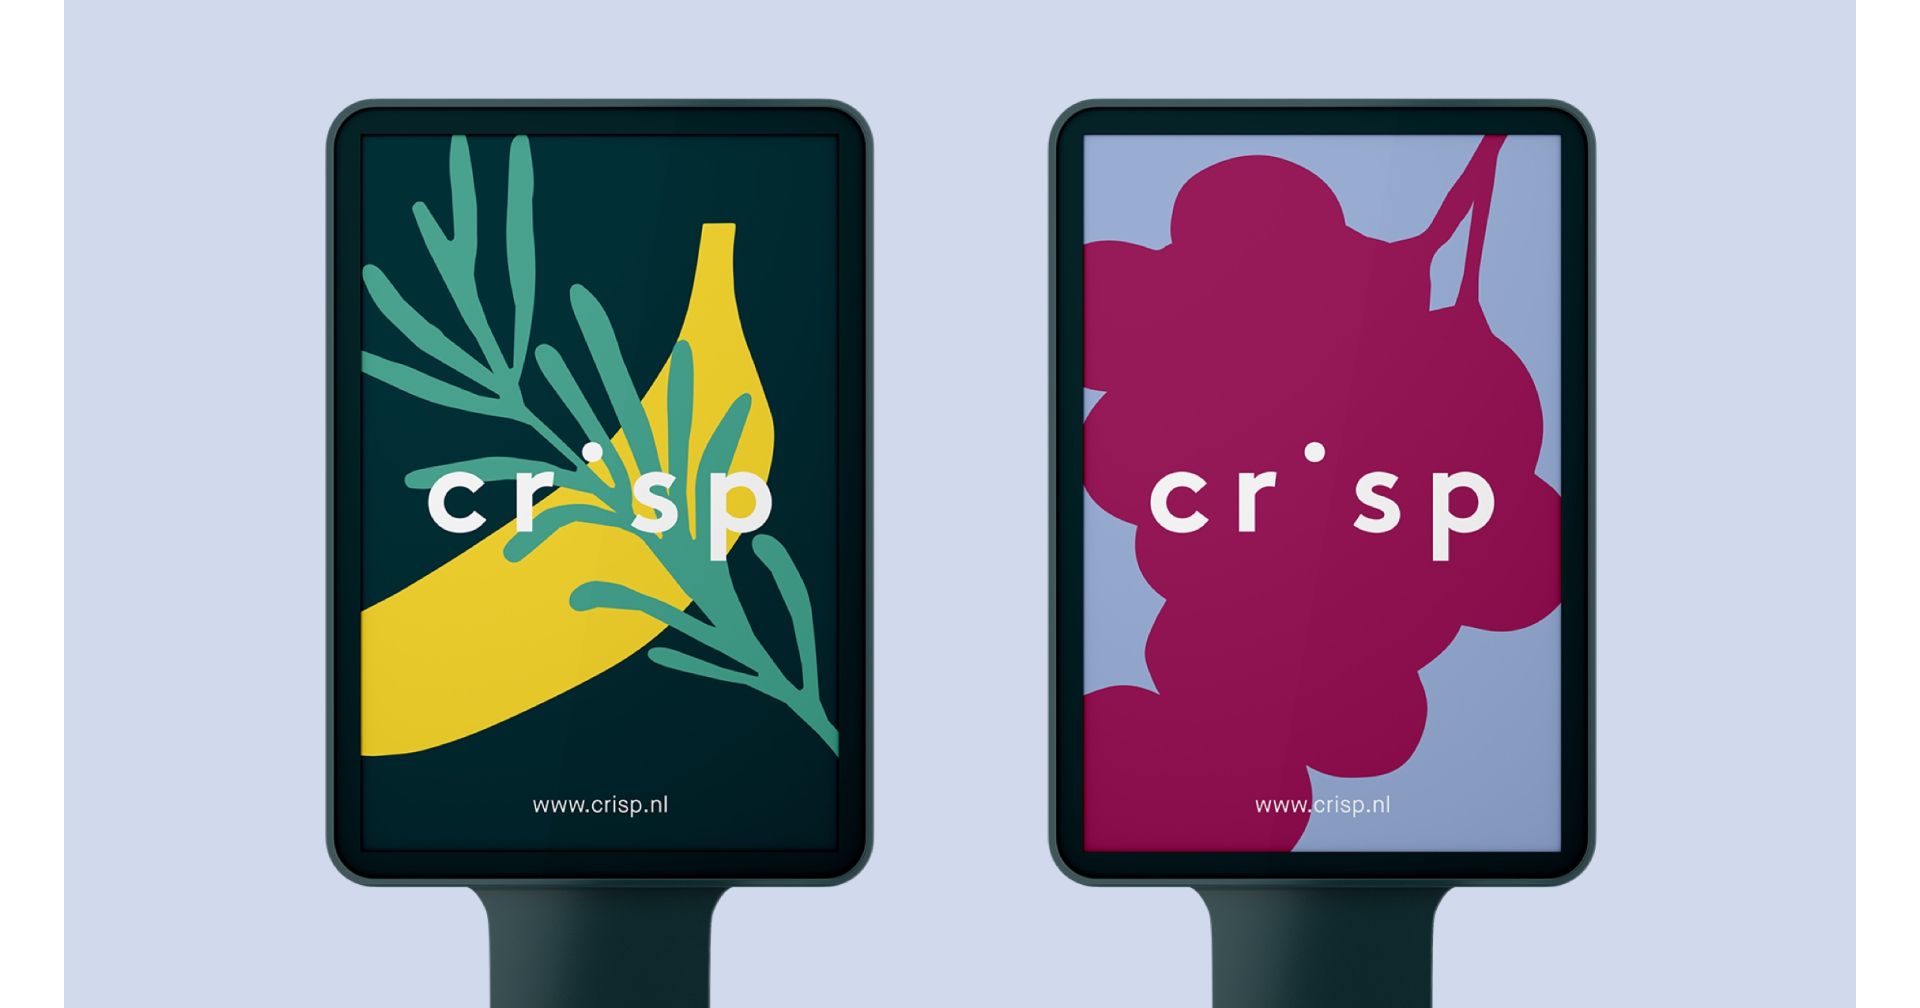 Crisp colourful graphic design